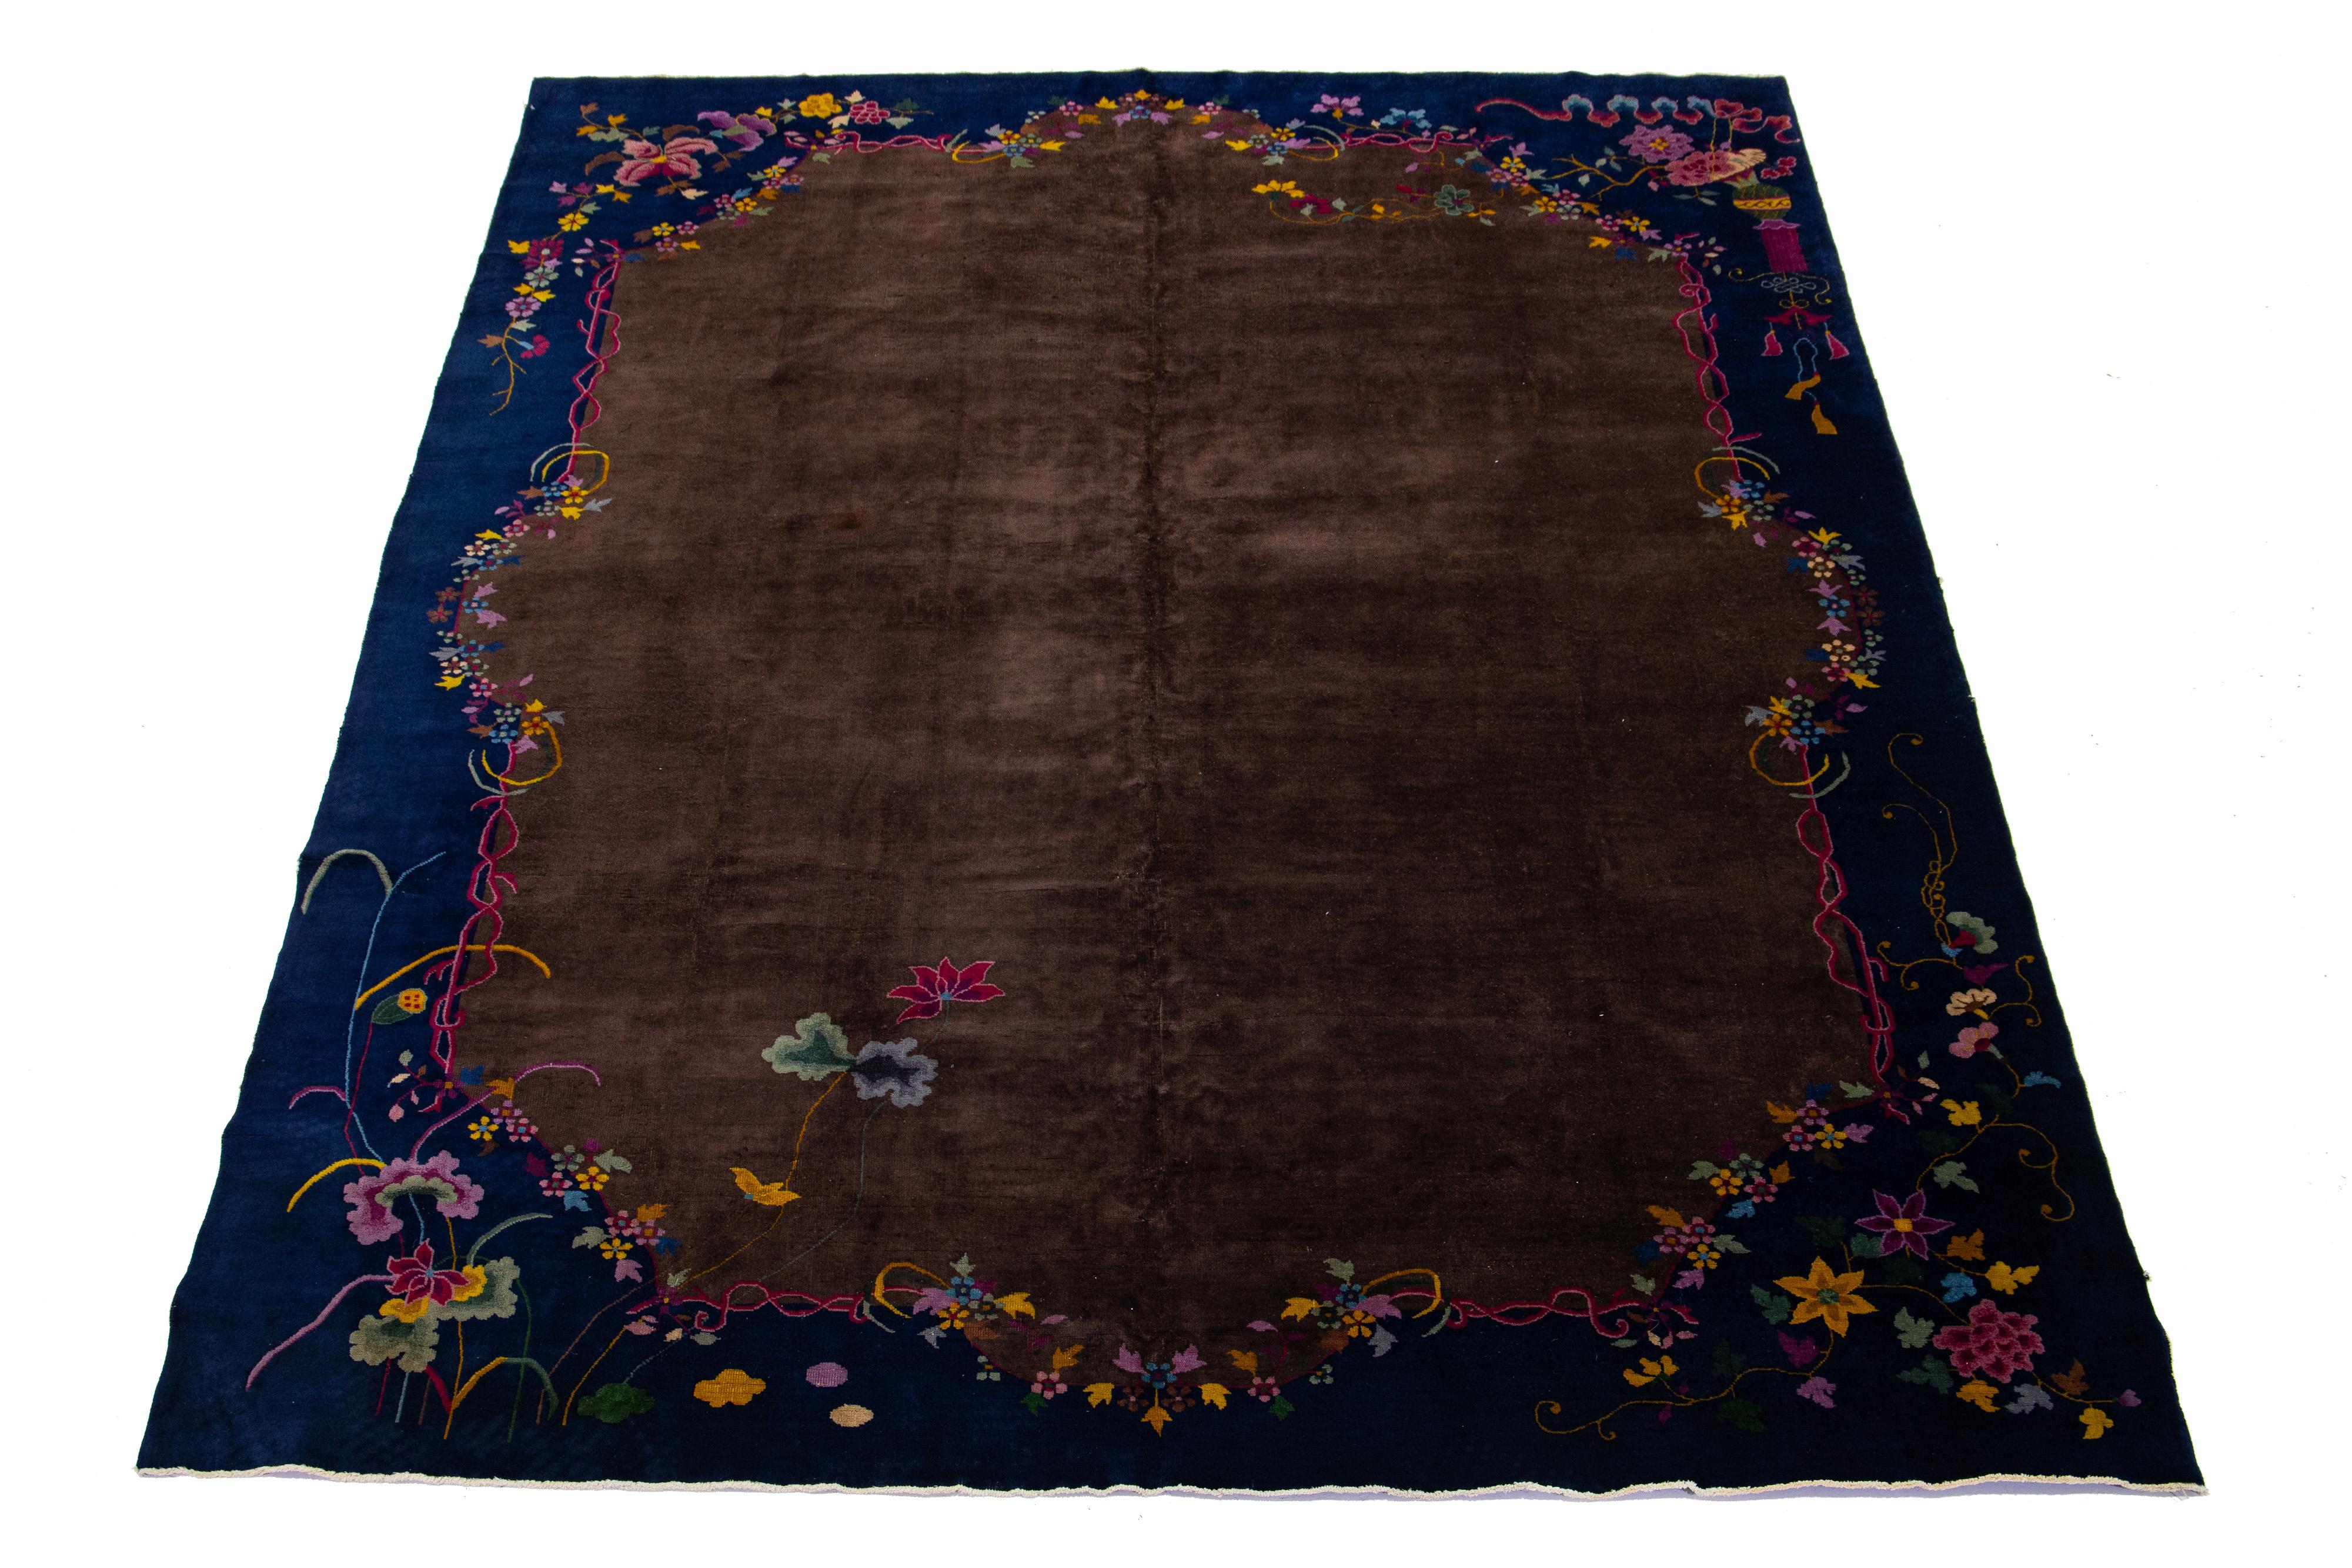 Schöner antiker chinesischer Art-Déco-Teppich, handgeknüpfte Wolle mit braunem Feld. Dieser Teppich hat einen marineblauen Rahmen und mehrfarbige Akzente in einem klassischen chinesischen Blumenmuster, das sich über den ganzen Teppich